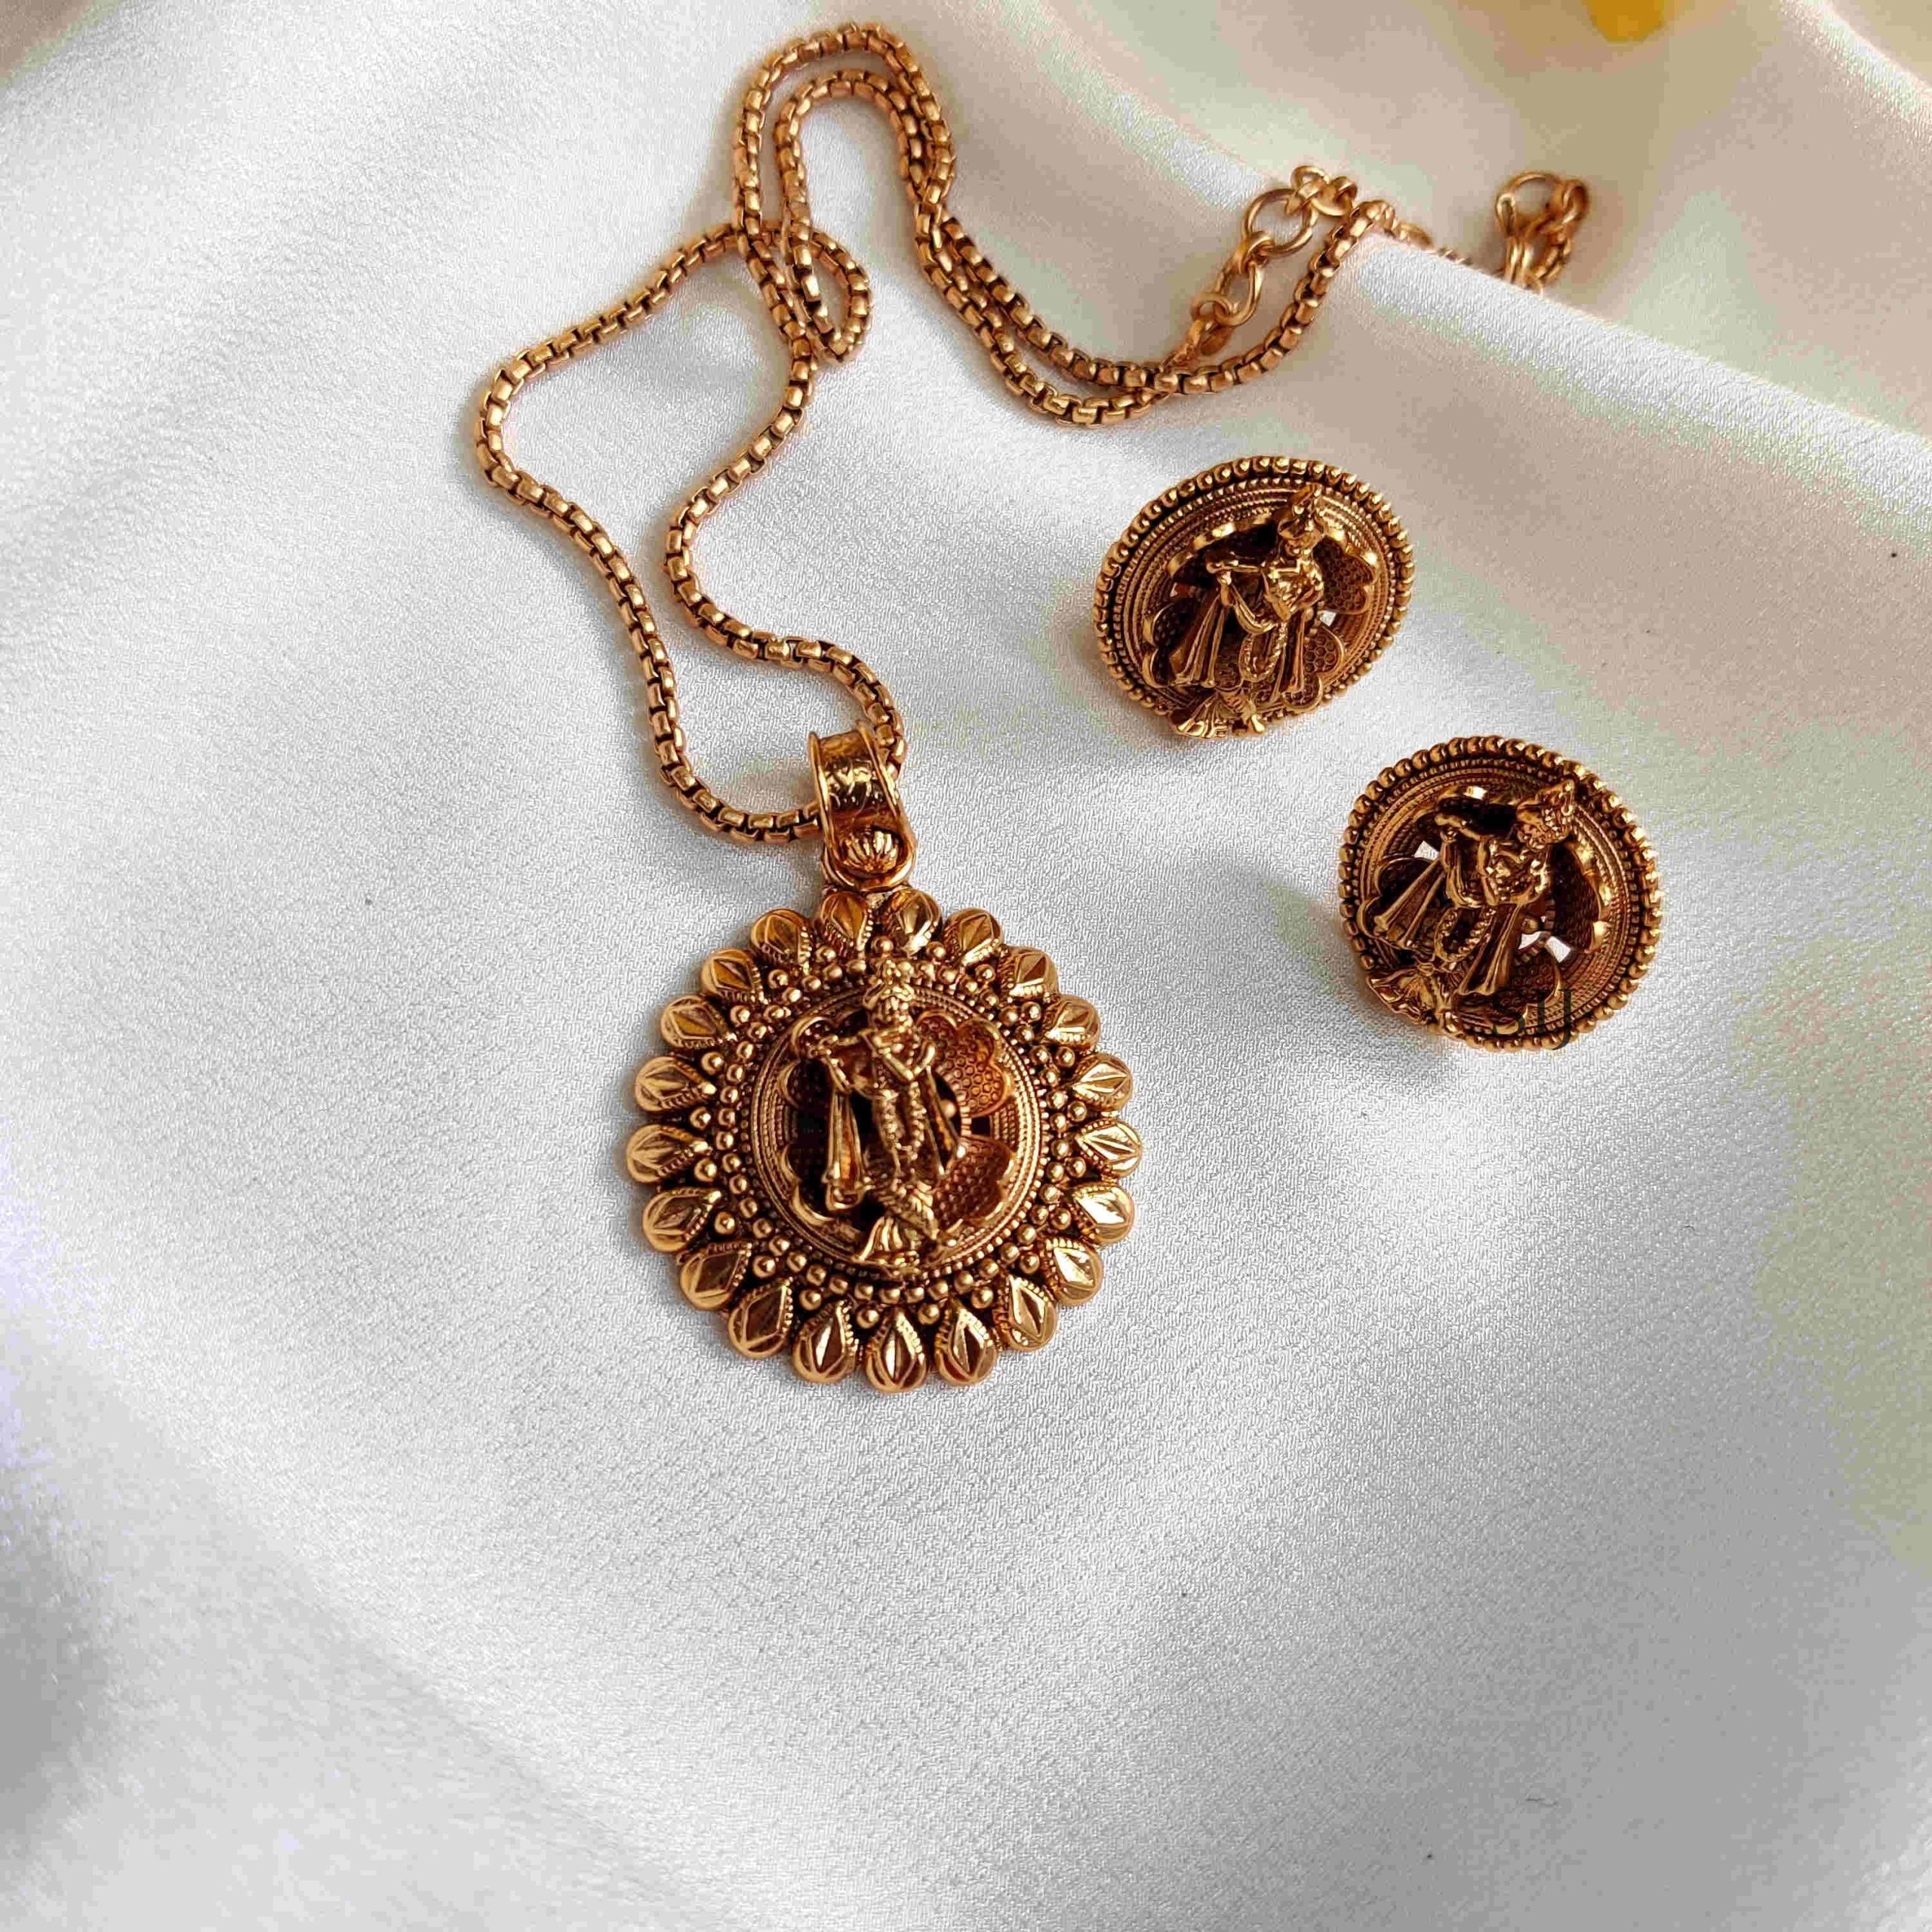 Stylish Krishna Motif Chain And Pendant Set